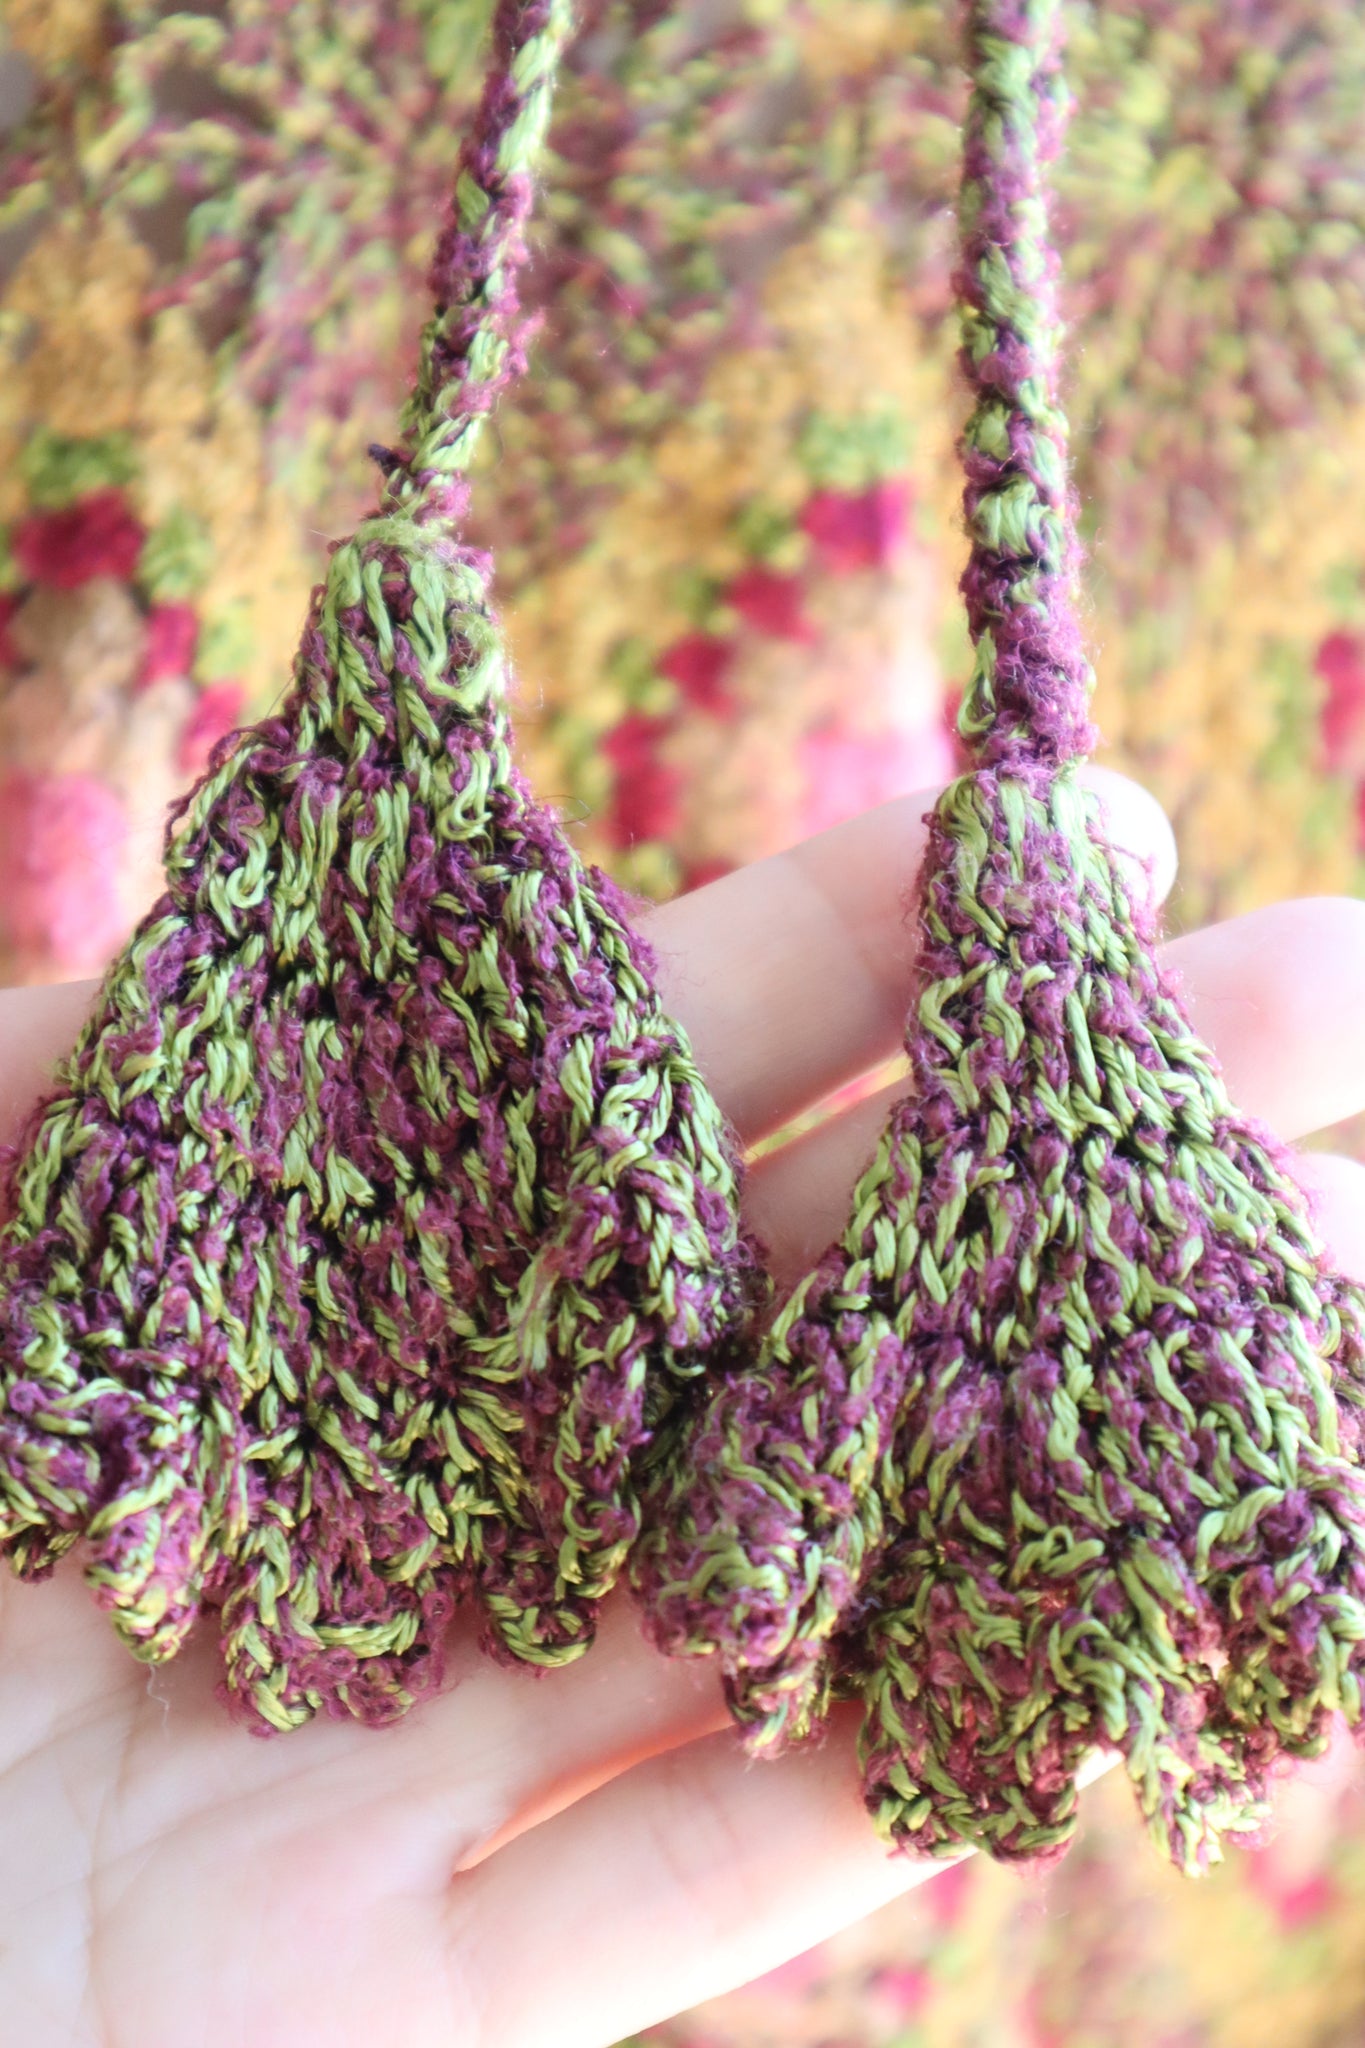 60s Crochet Silk Cotton Dress